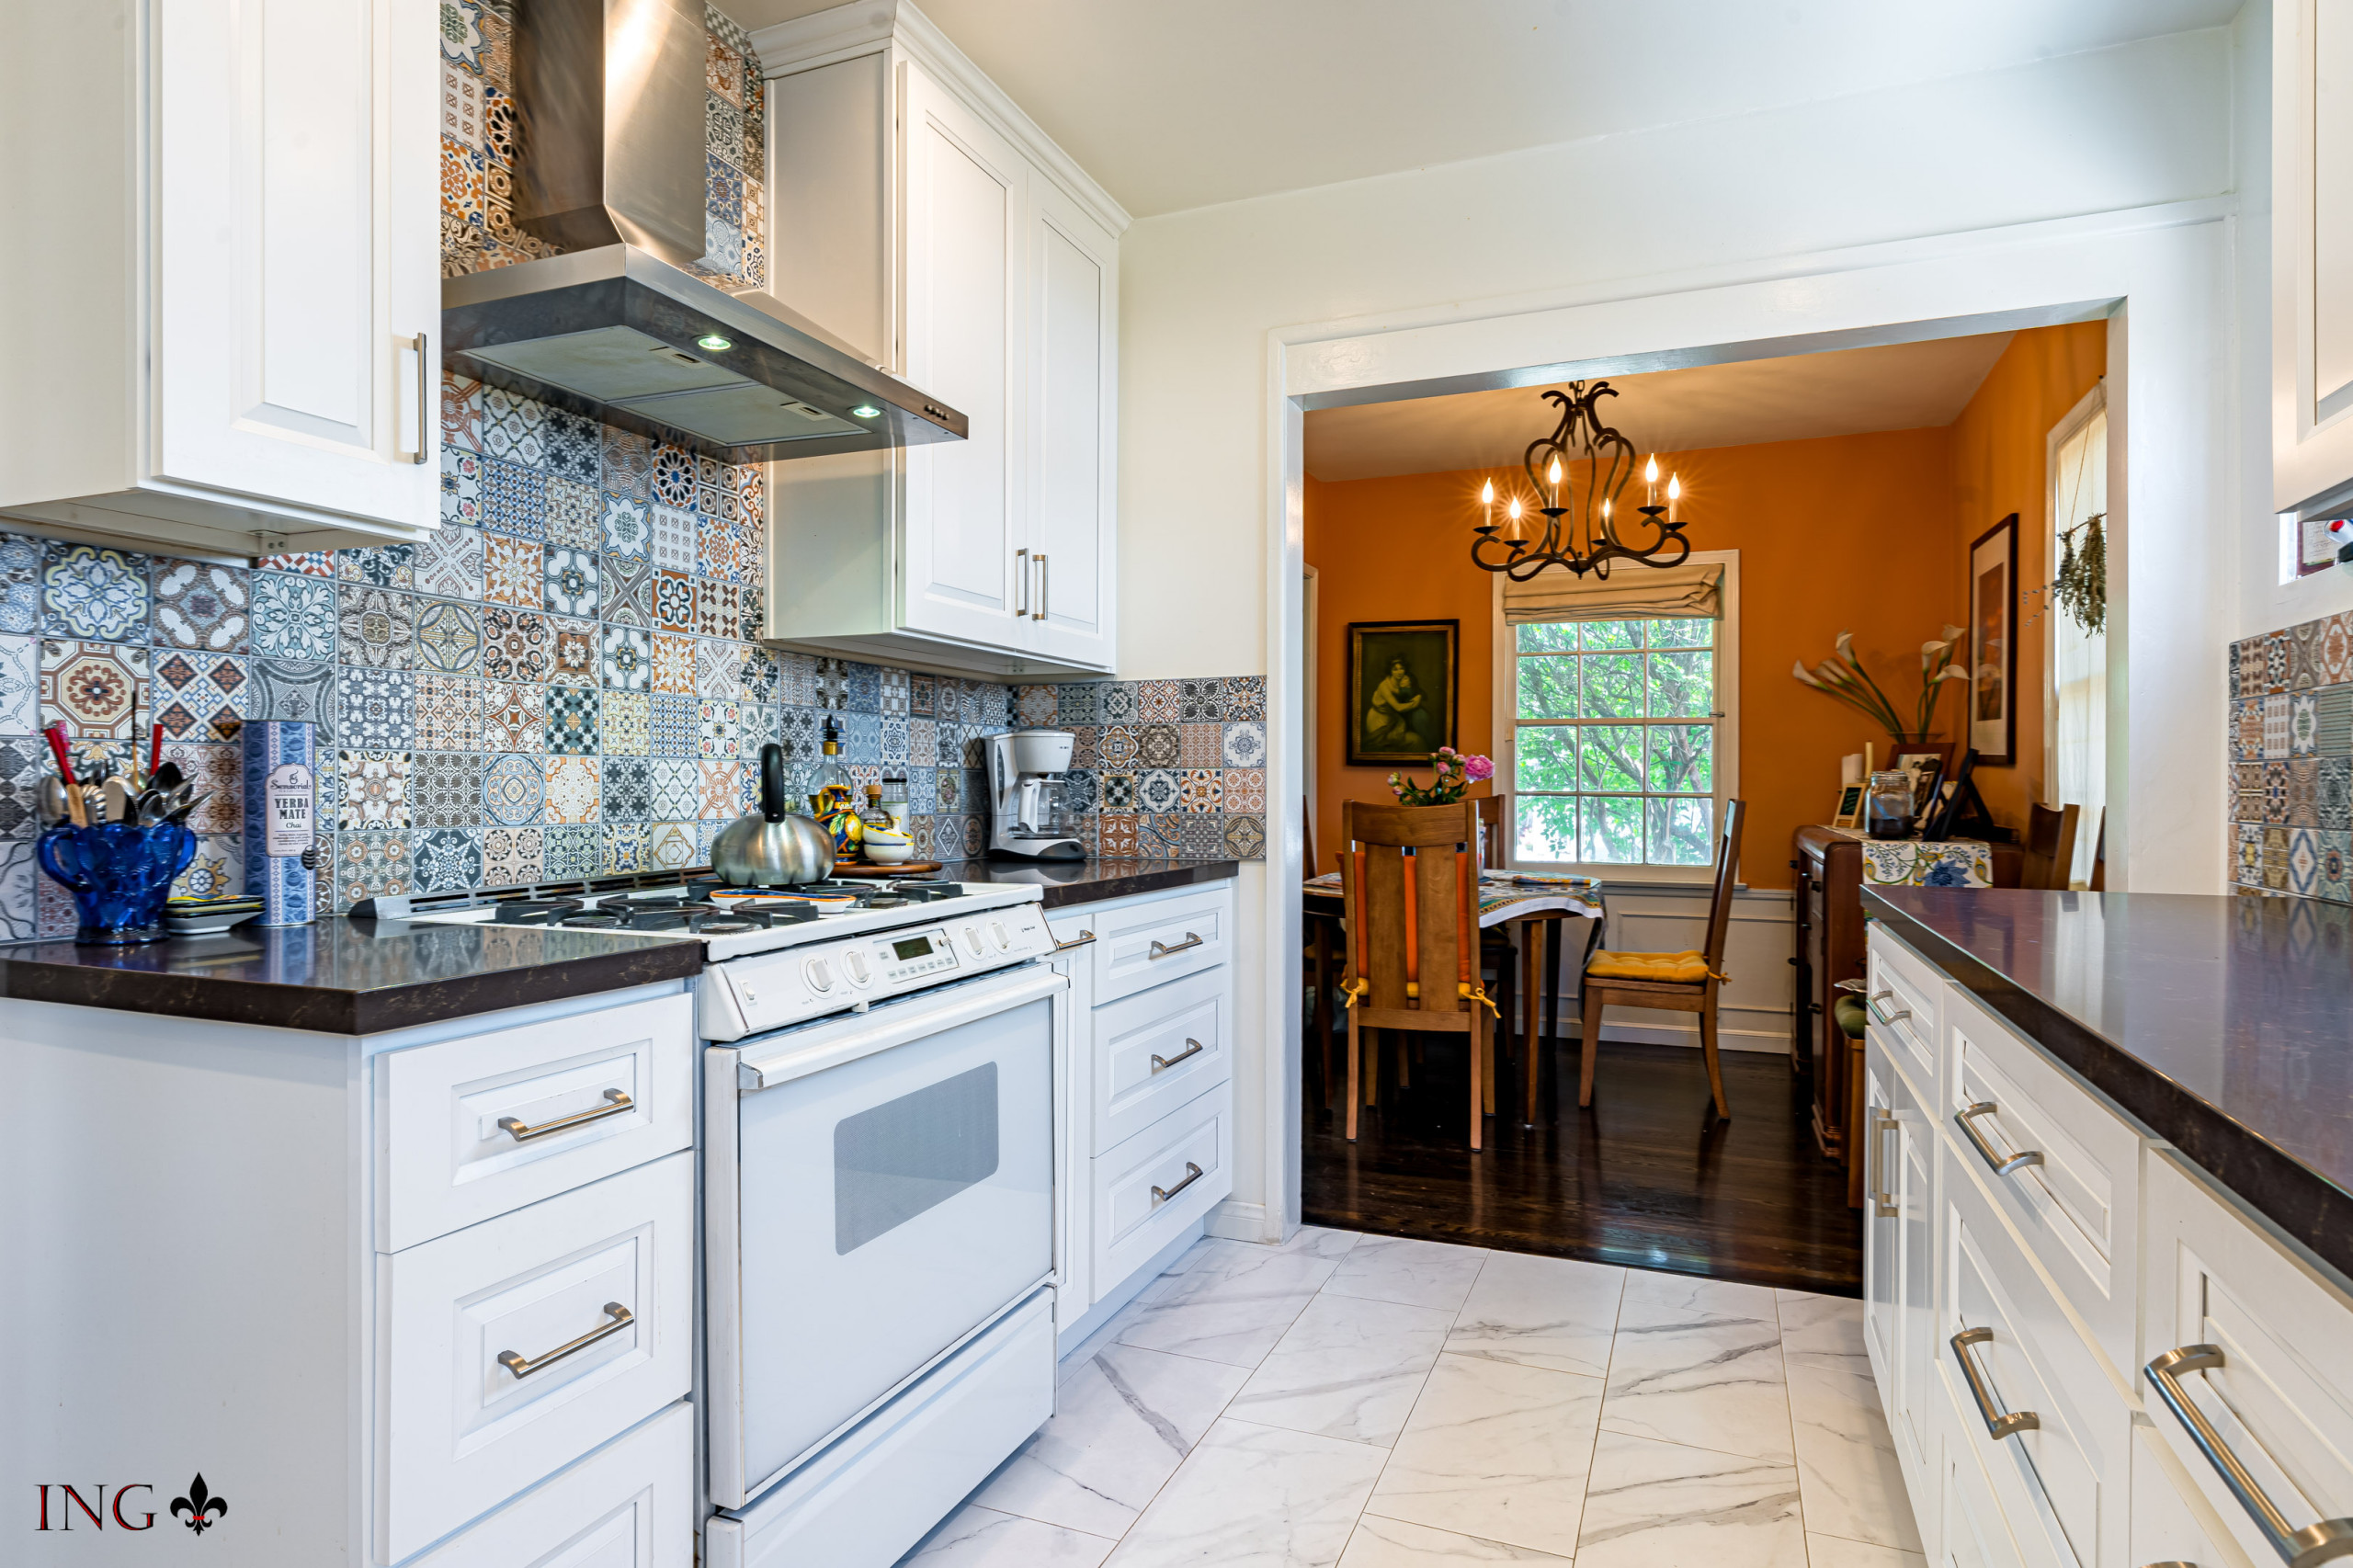 Tile Floor, Backsplash, Cabinet and Appliance Installation